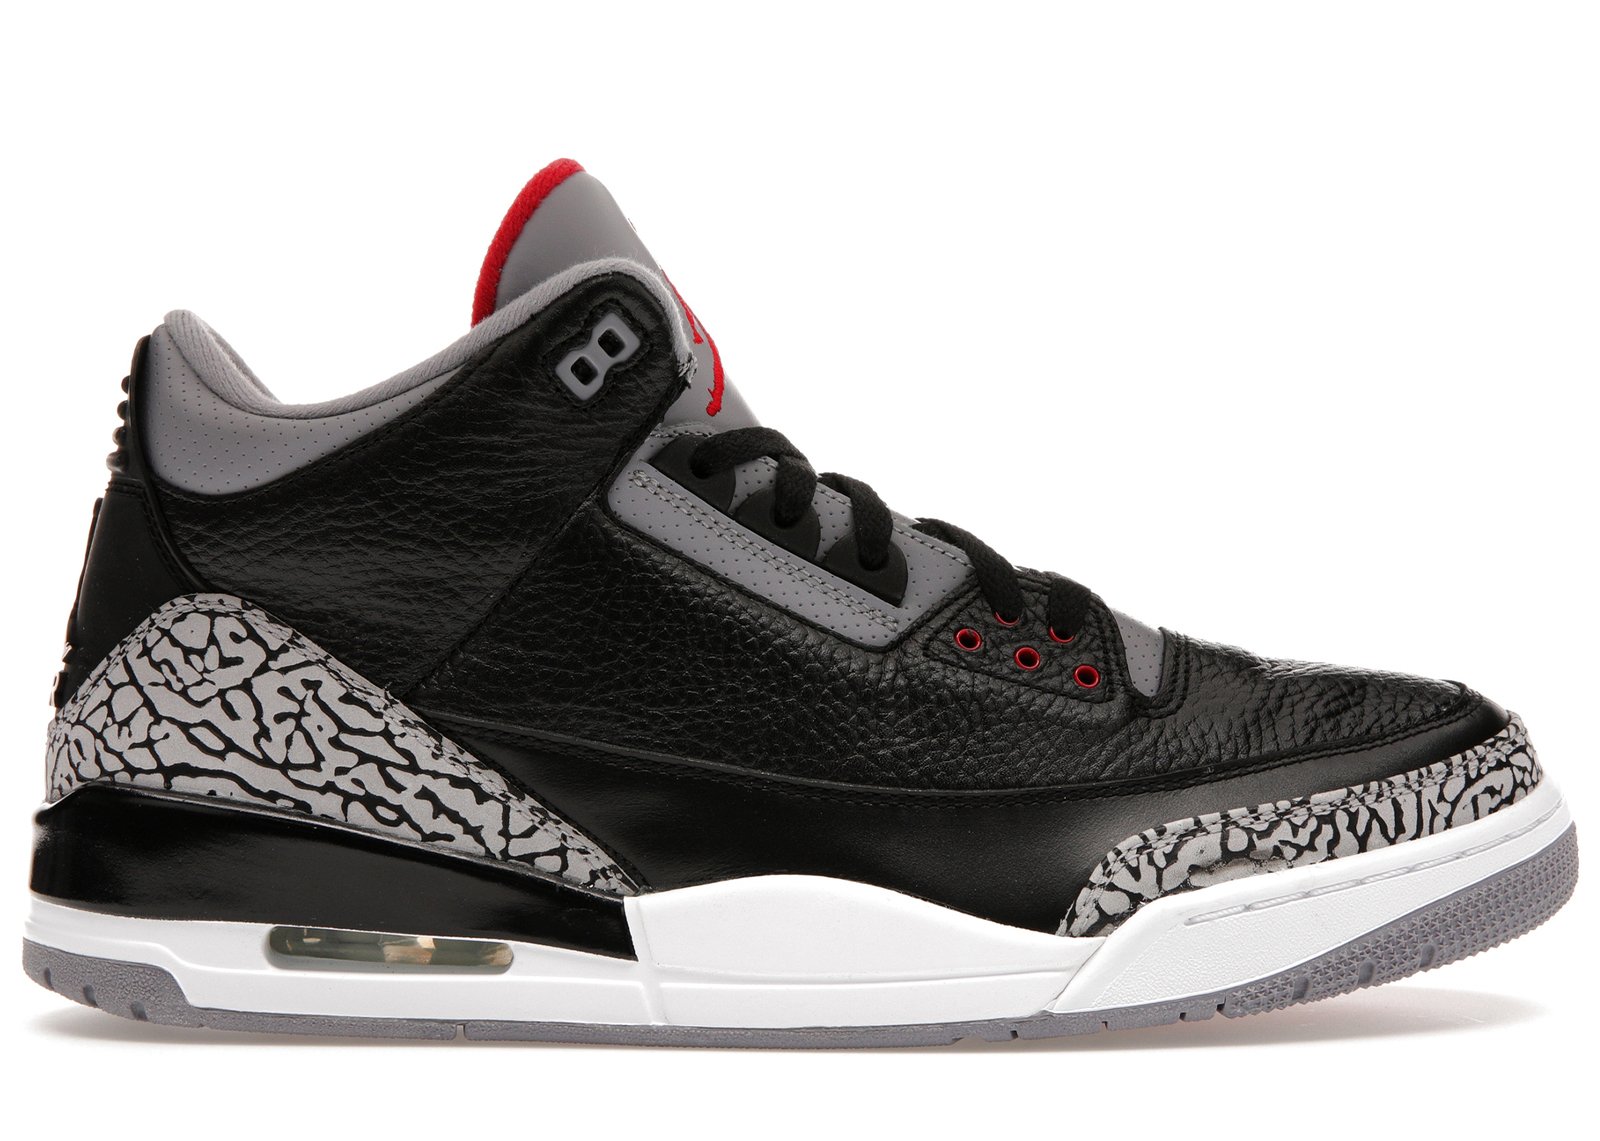 Jordan 3 Retro Black Cement (2011) sneakers